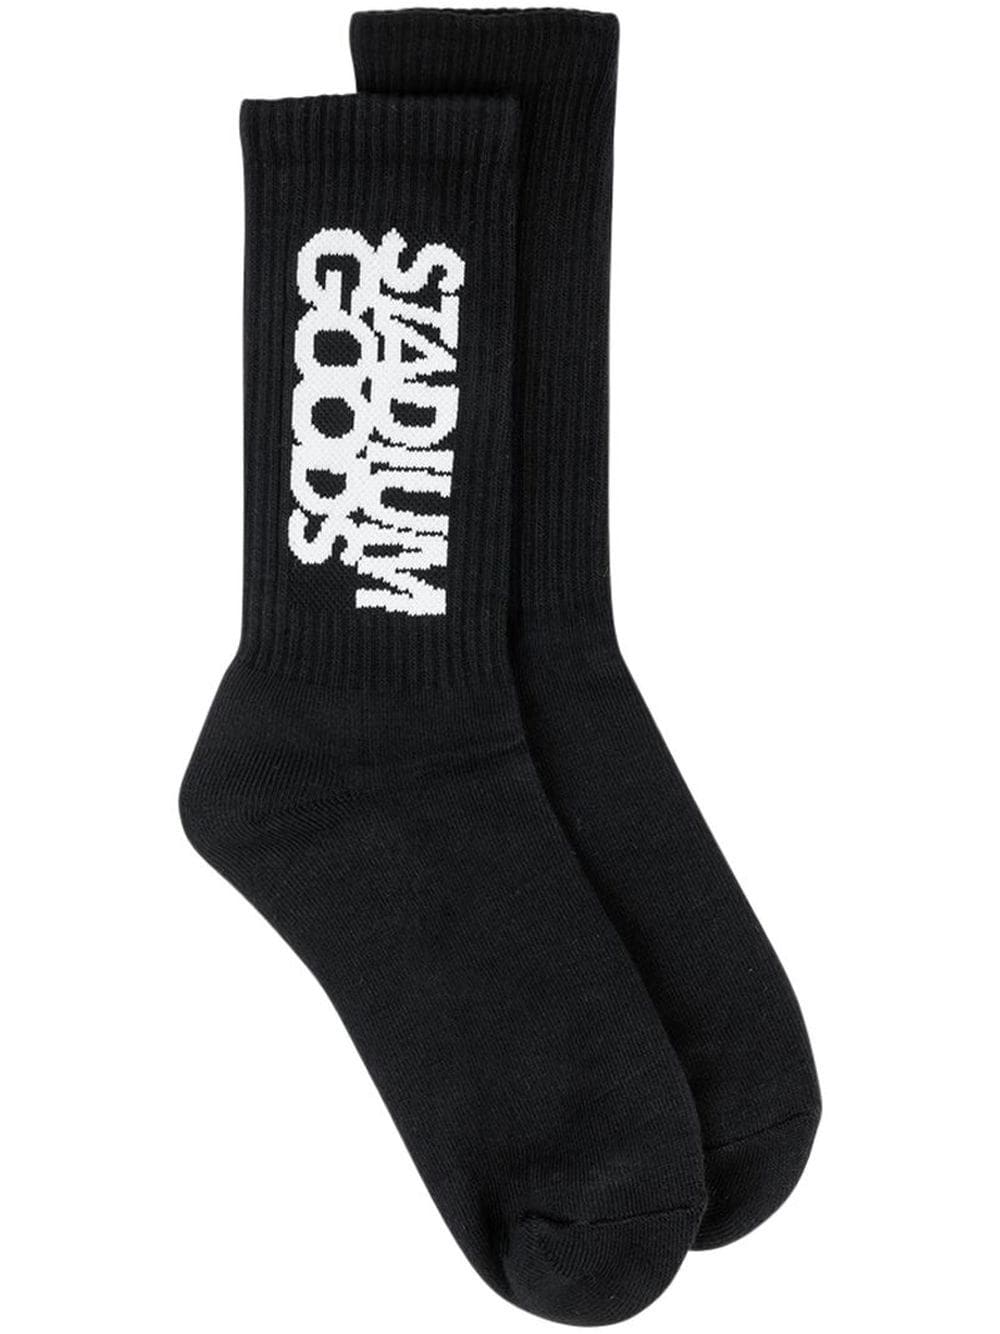 logo-print "Black Tie" crew socks